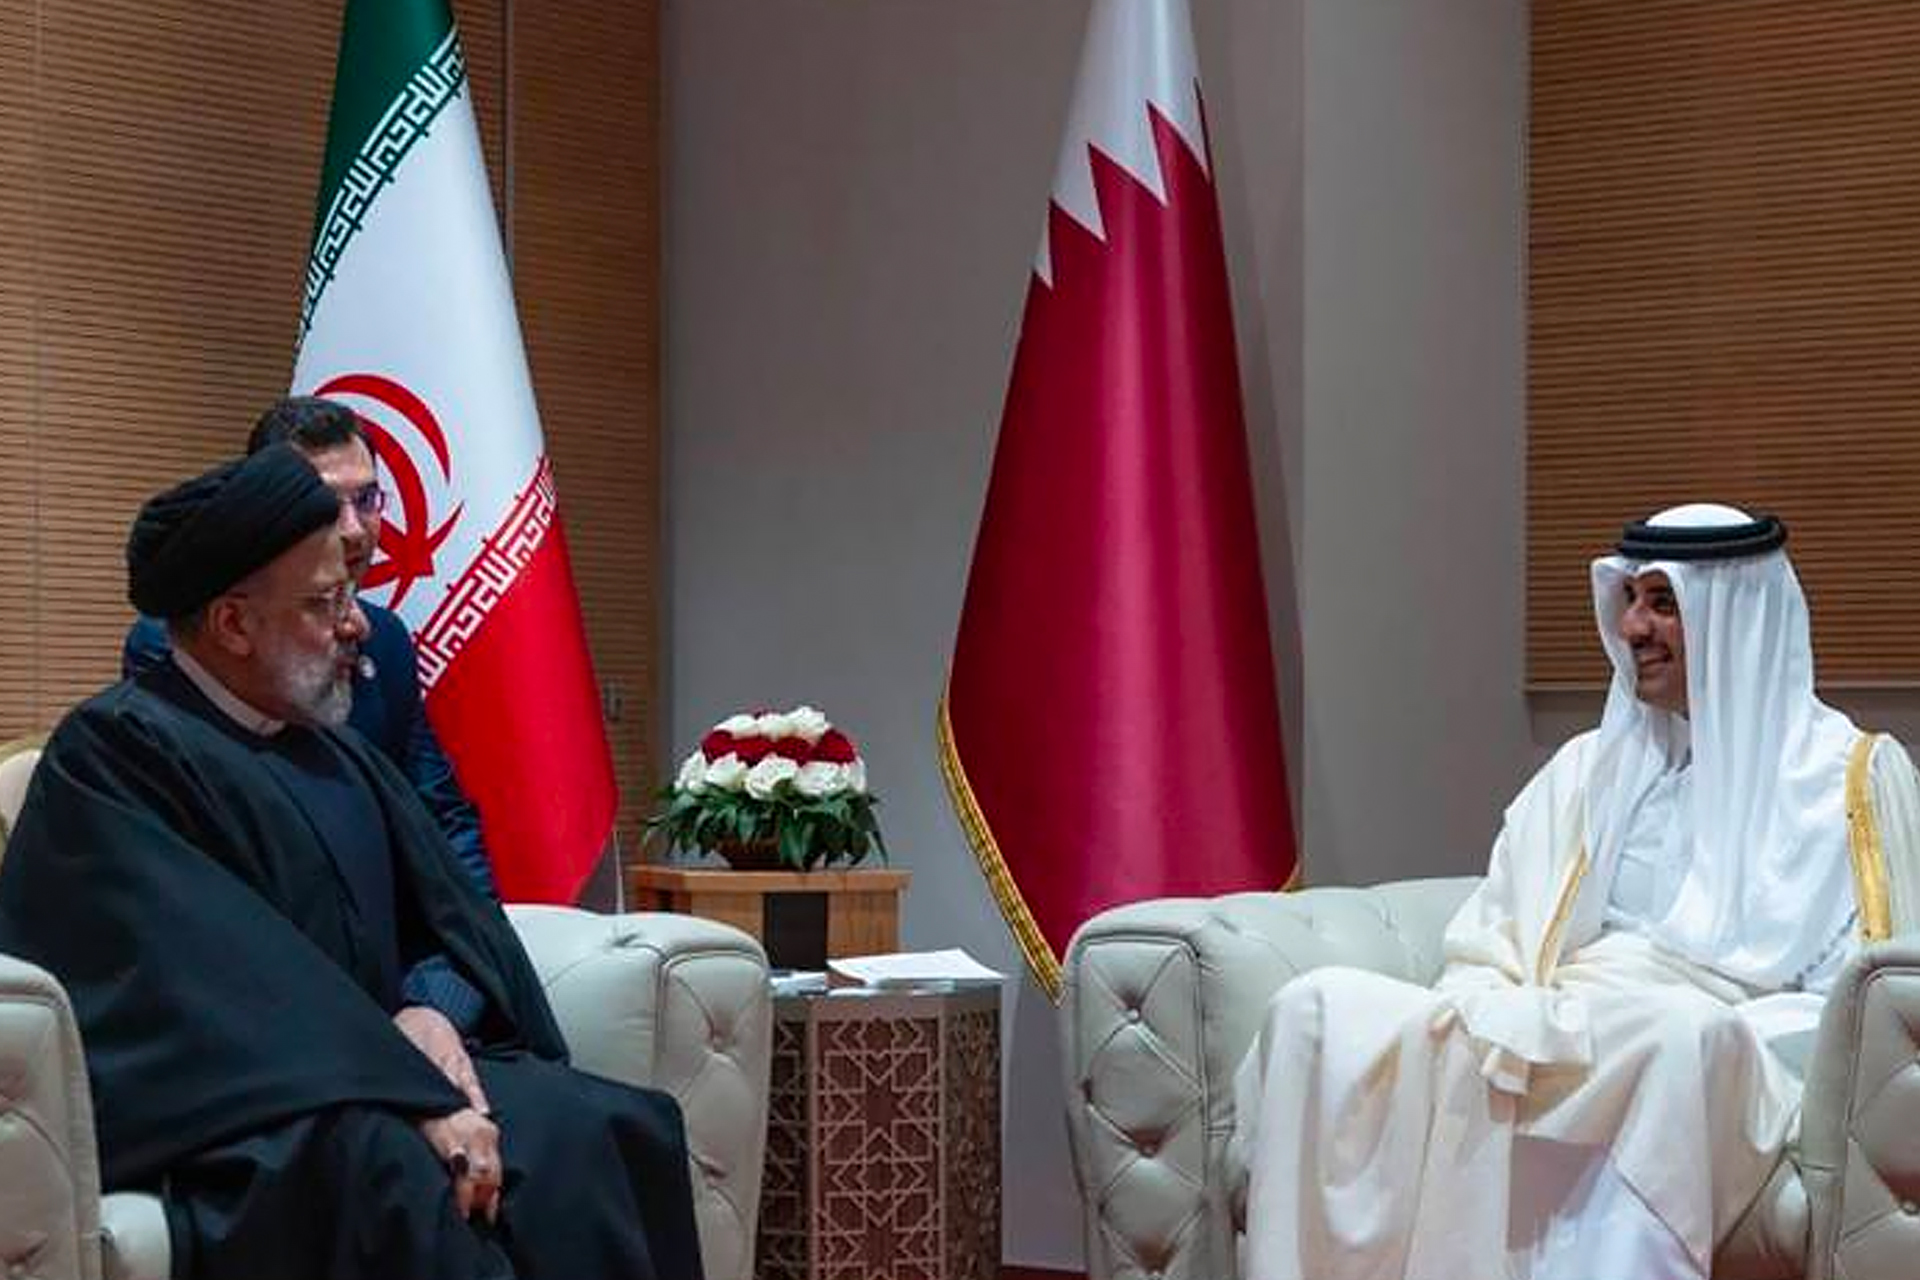 مباحثات بين أمير قطر والرئيس الإيراني في الجزائر | أخبار – البوكس نيوز